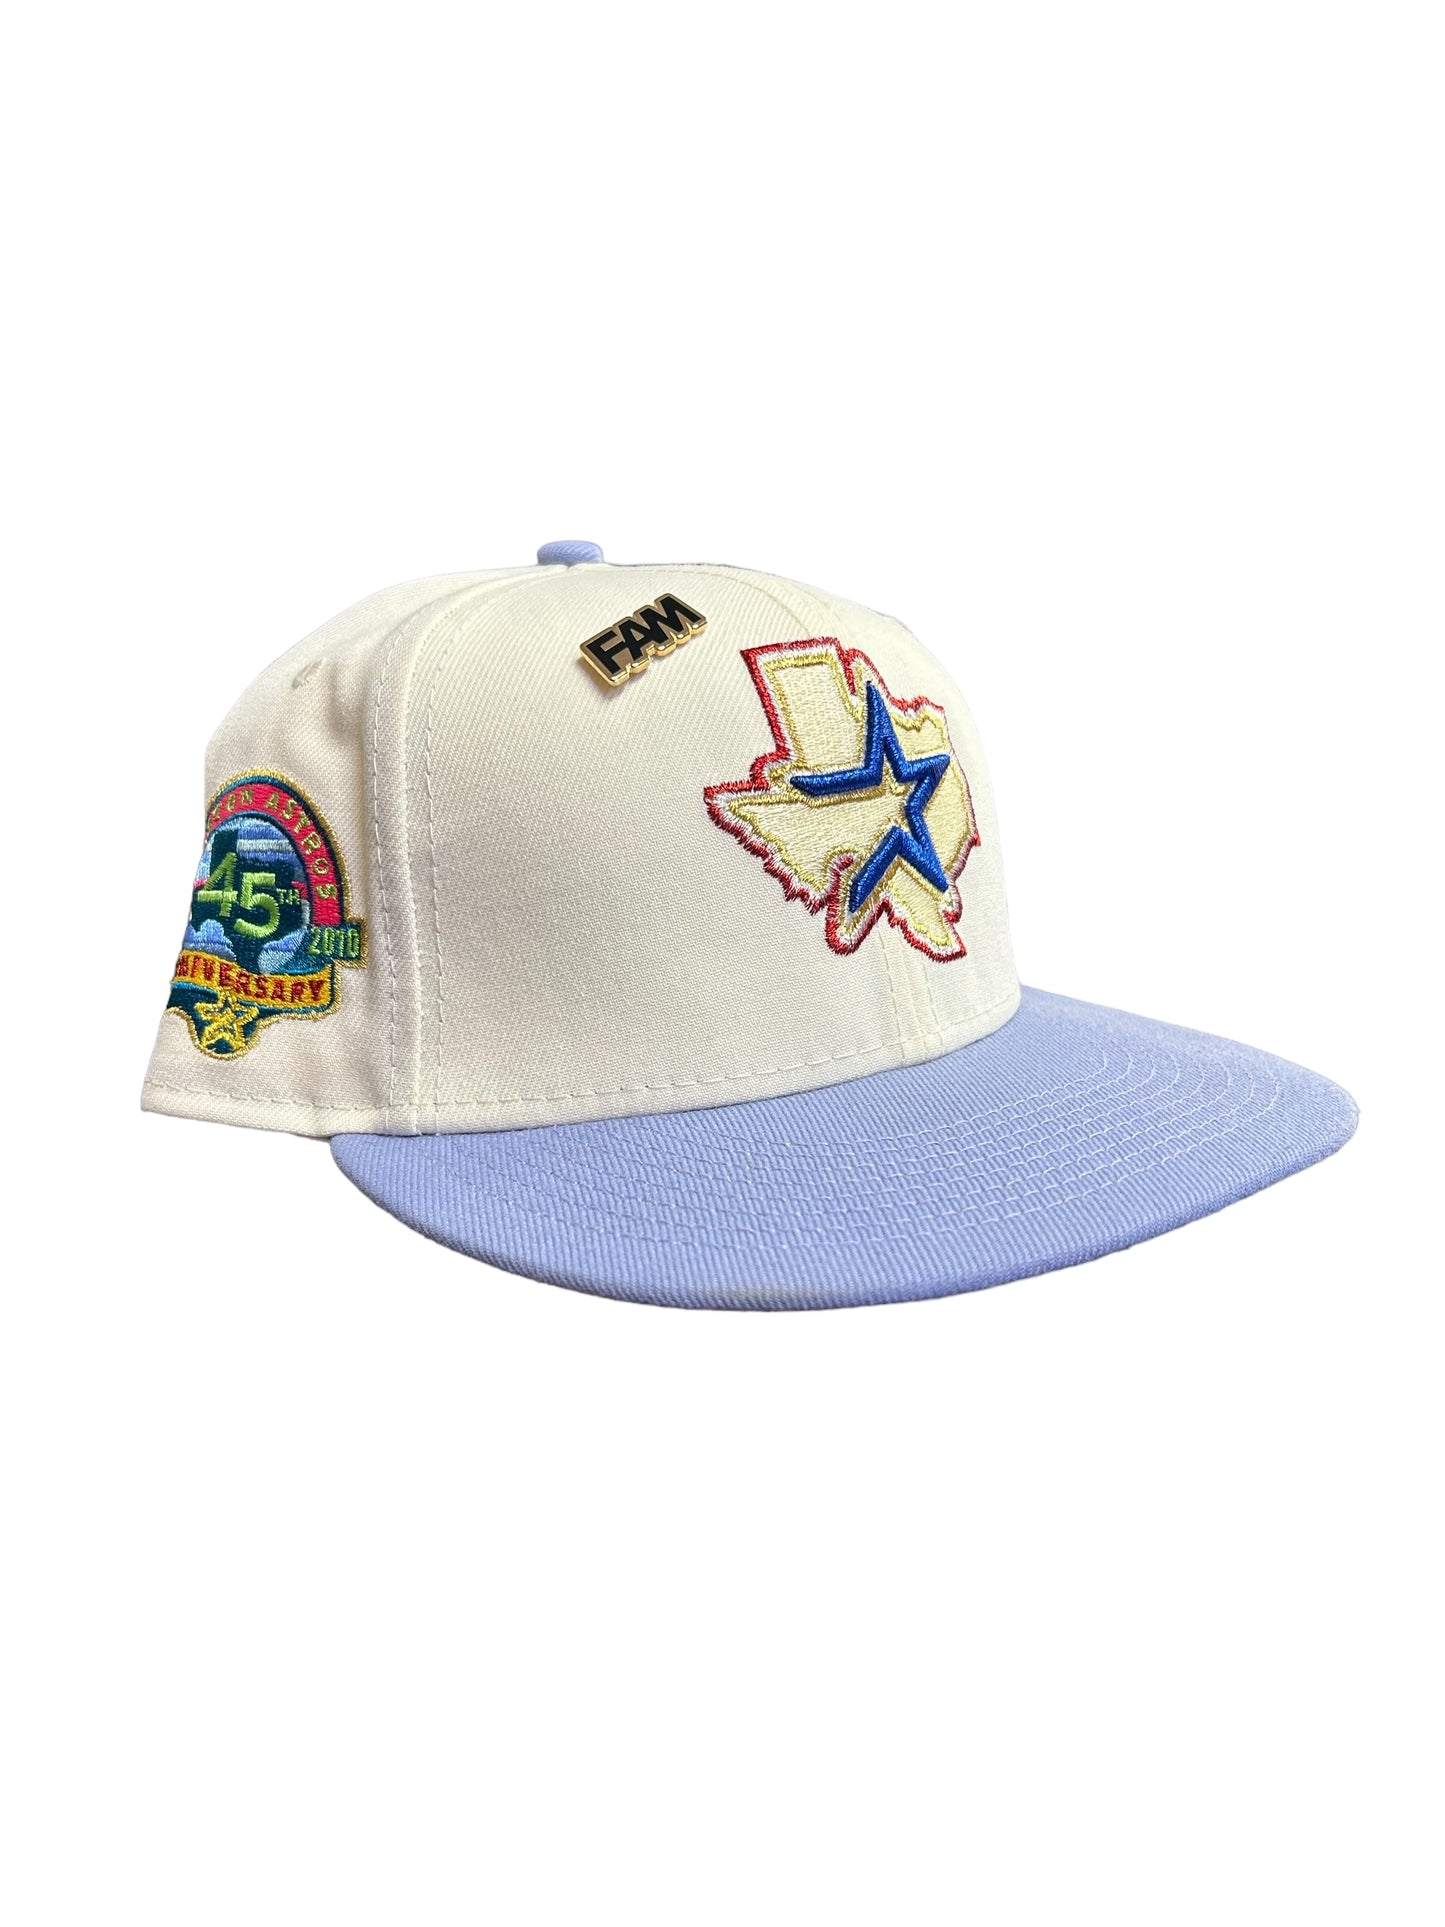 Houston Astros Easter Hat